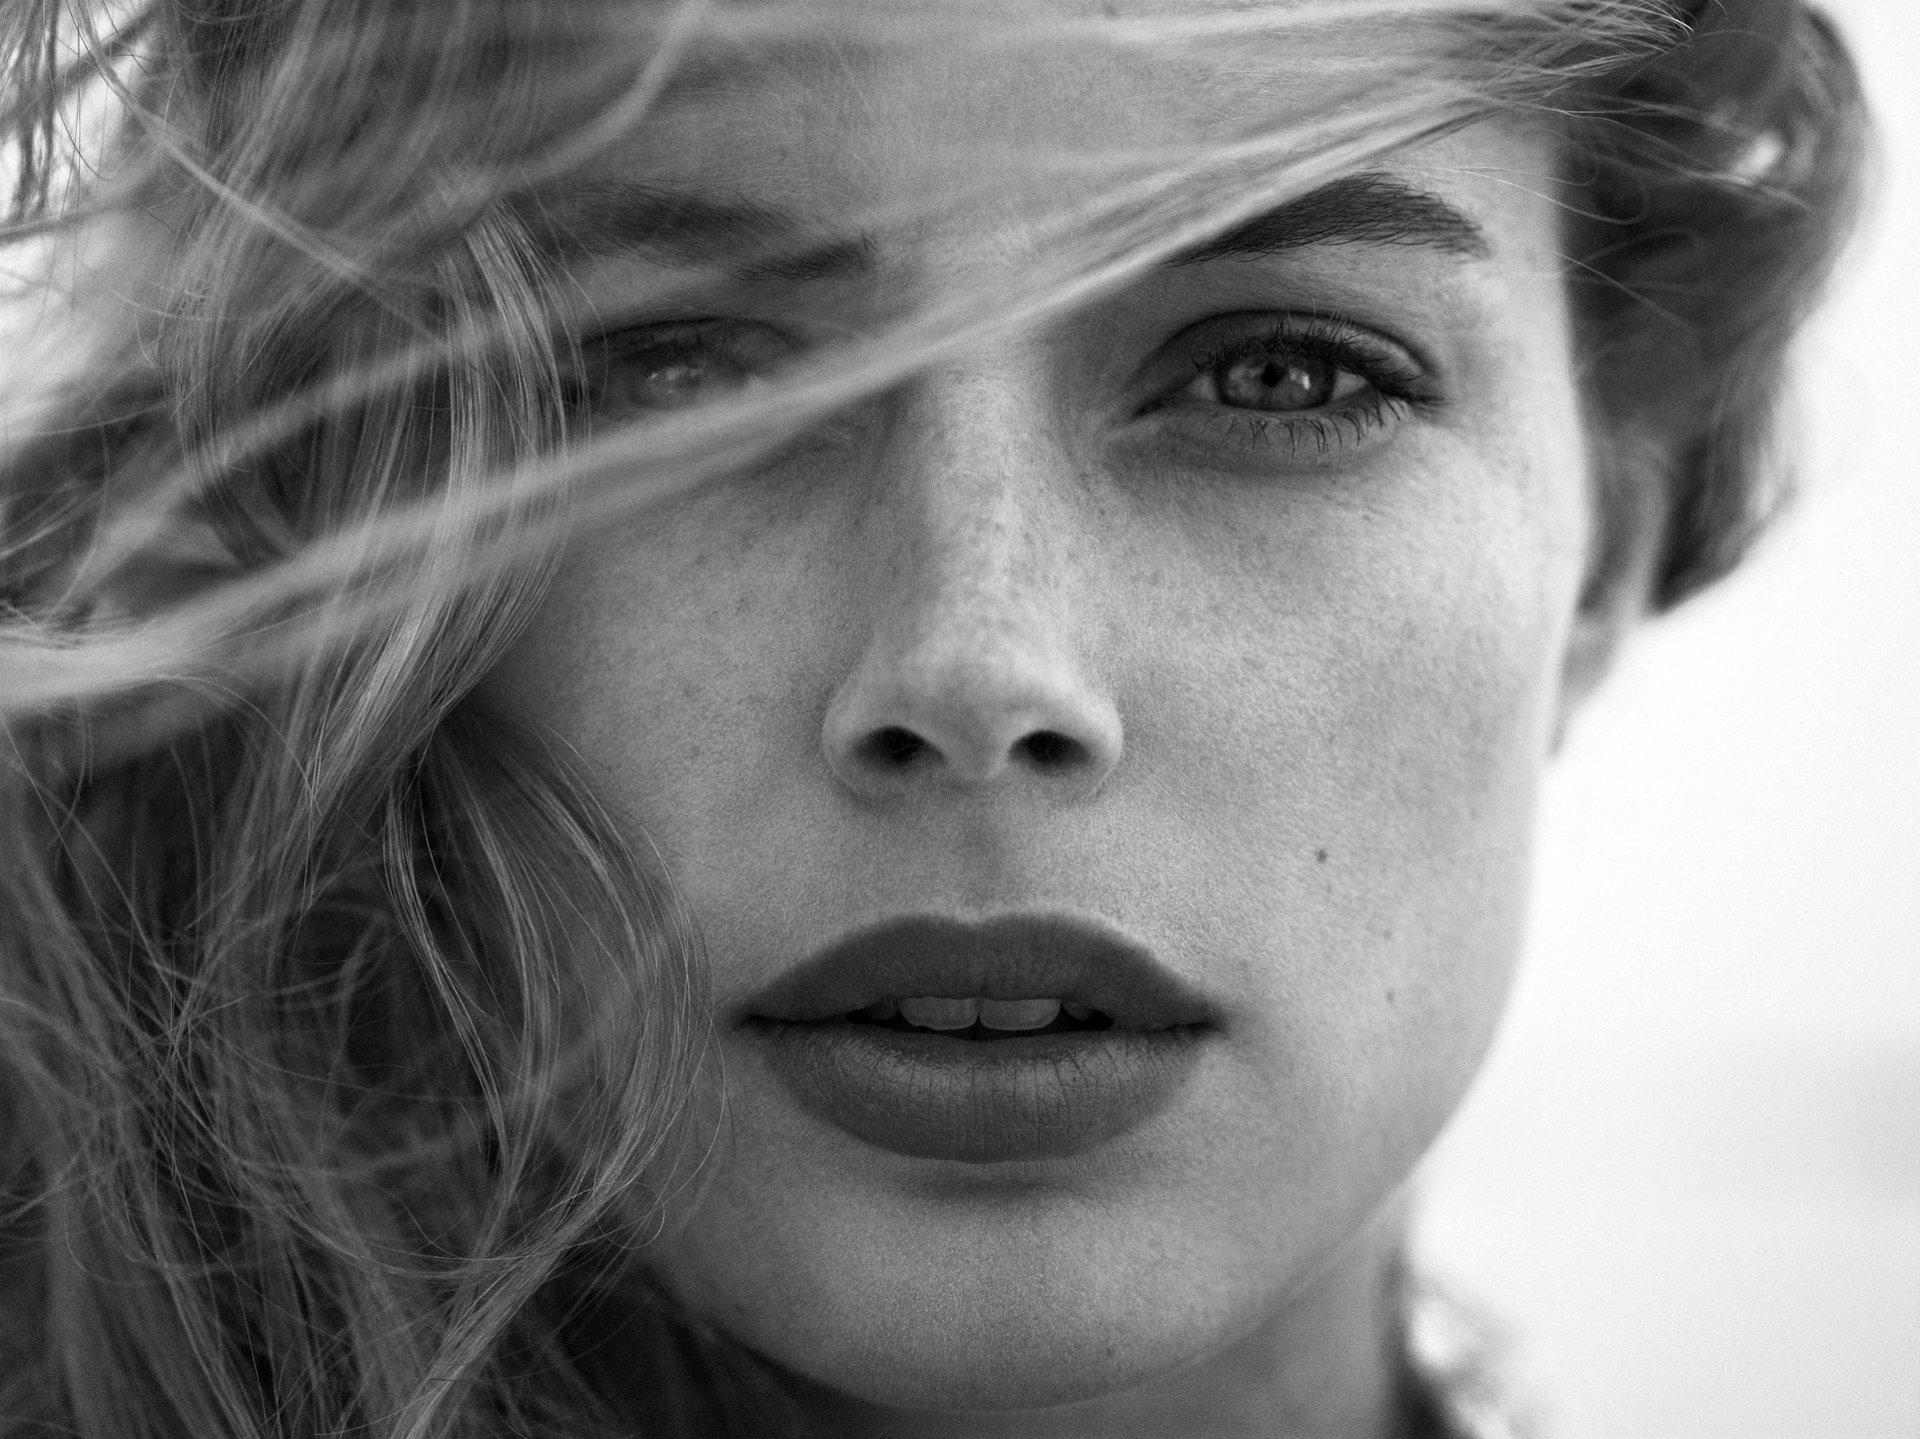 doutzen kroes model girl victoria's secret angel face portrait hair view lips black and white